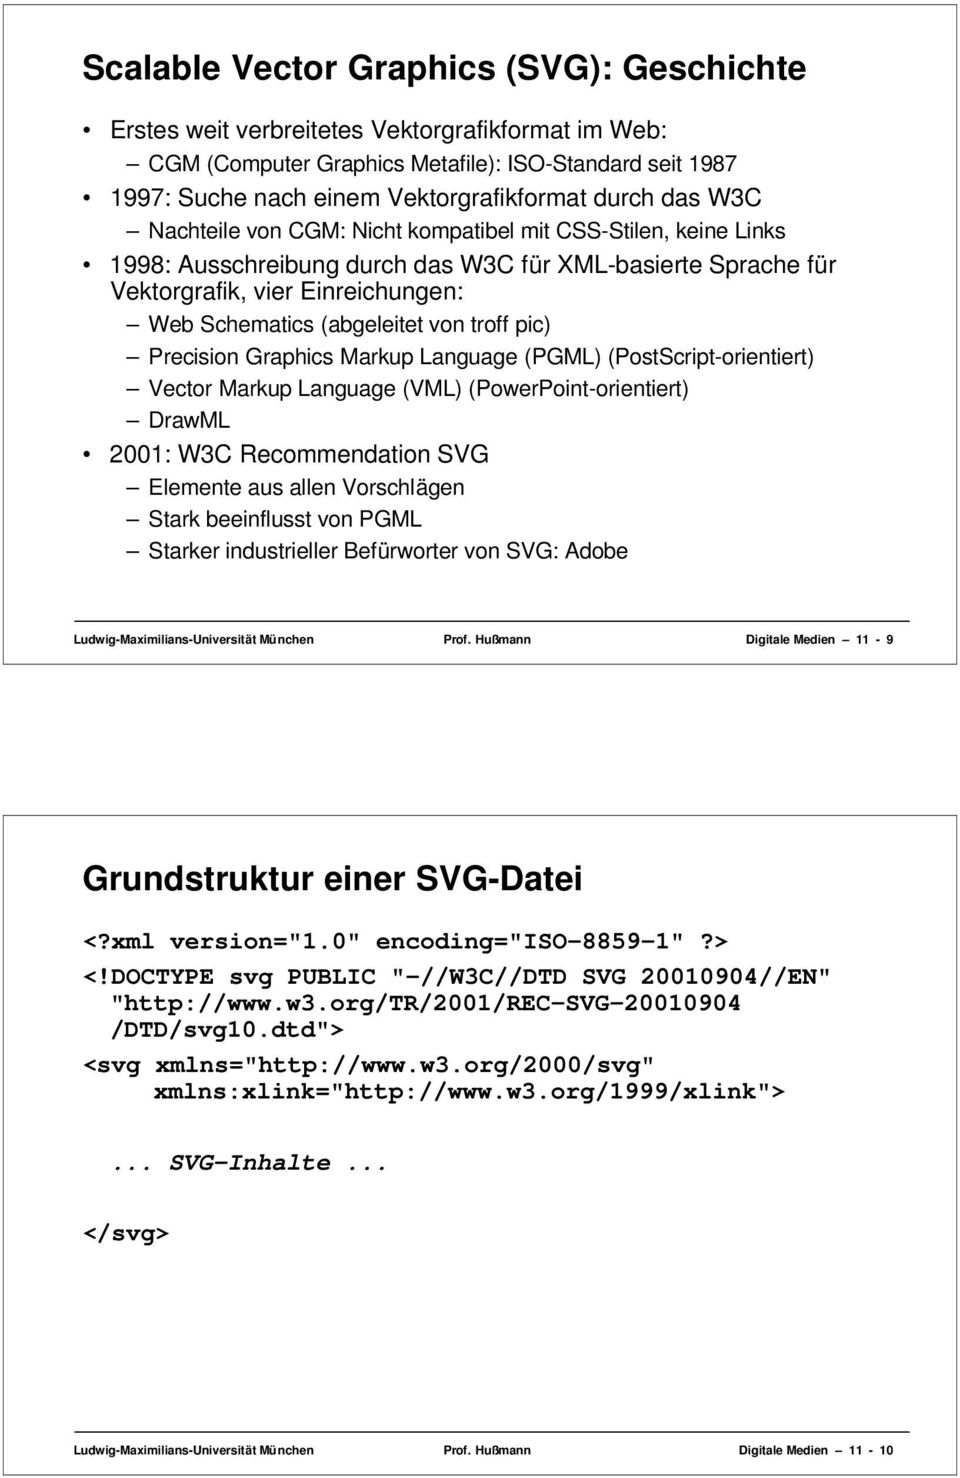 troff pic) Precision Graphics Markup Language (PGML) (PostScript-orientiert) Vector Markup Language (VML) (PowerPoint-orientiert) DrawML 2001: W3C Recommendation SVG Elemente aus allen Vorschlägen